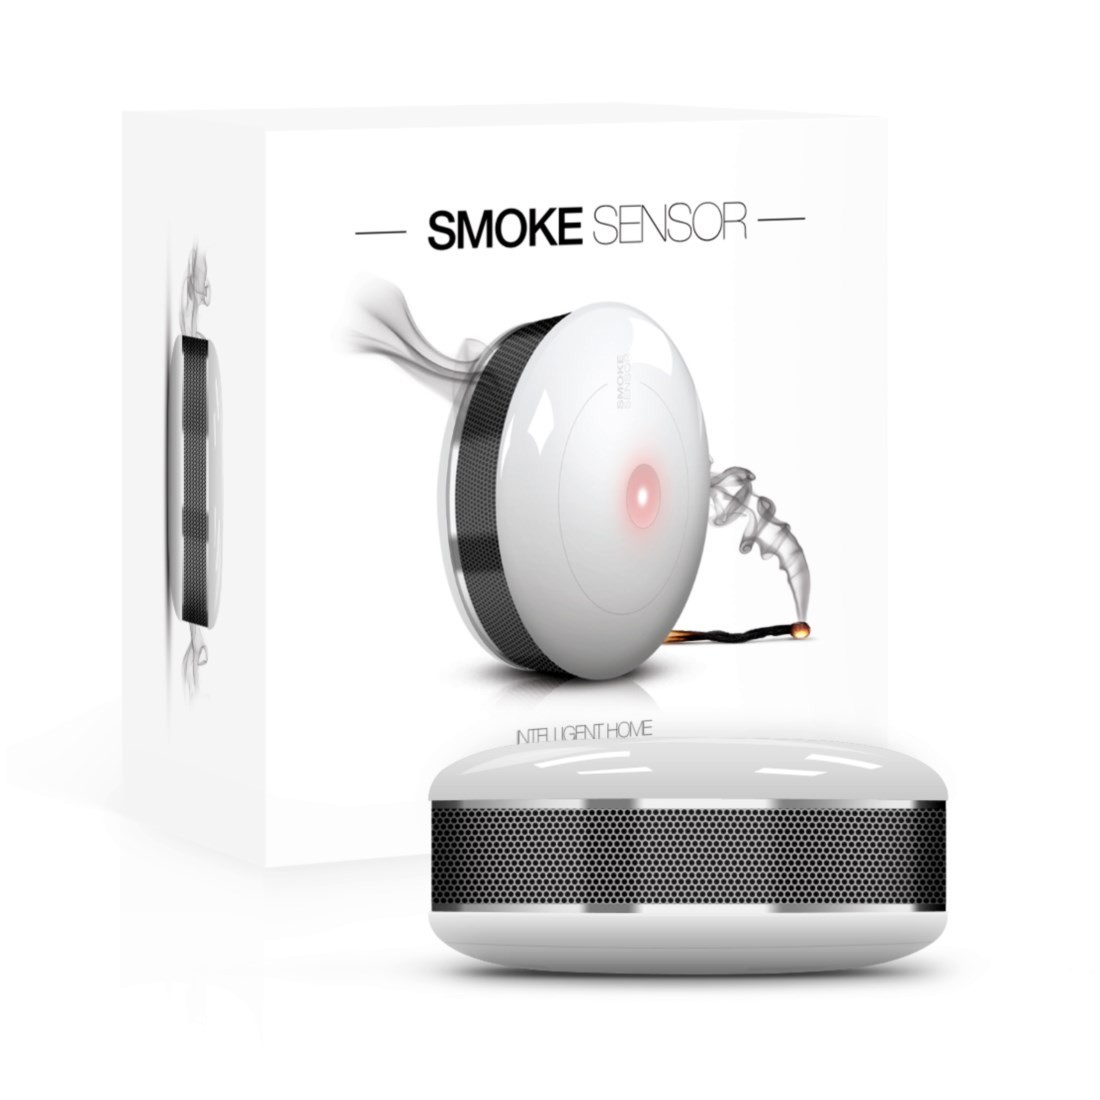 Fibaro Smoke Sensor